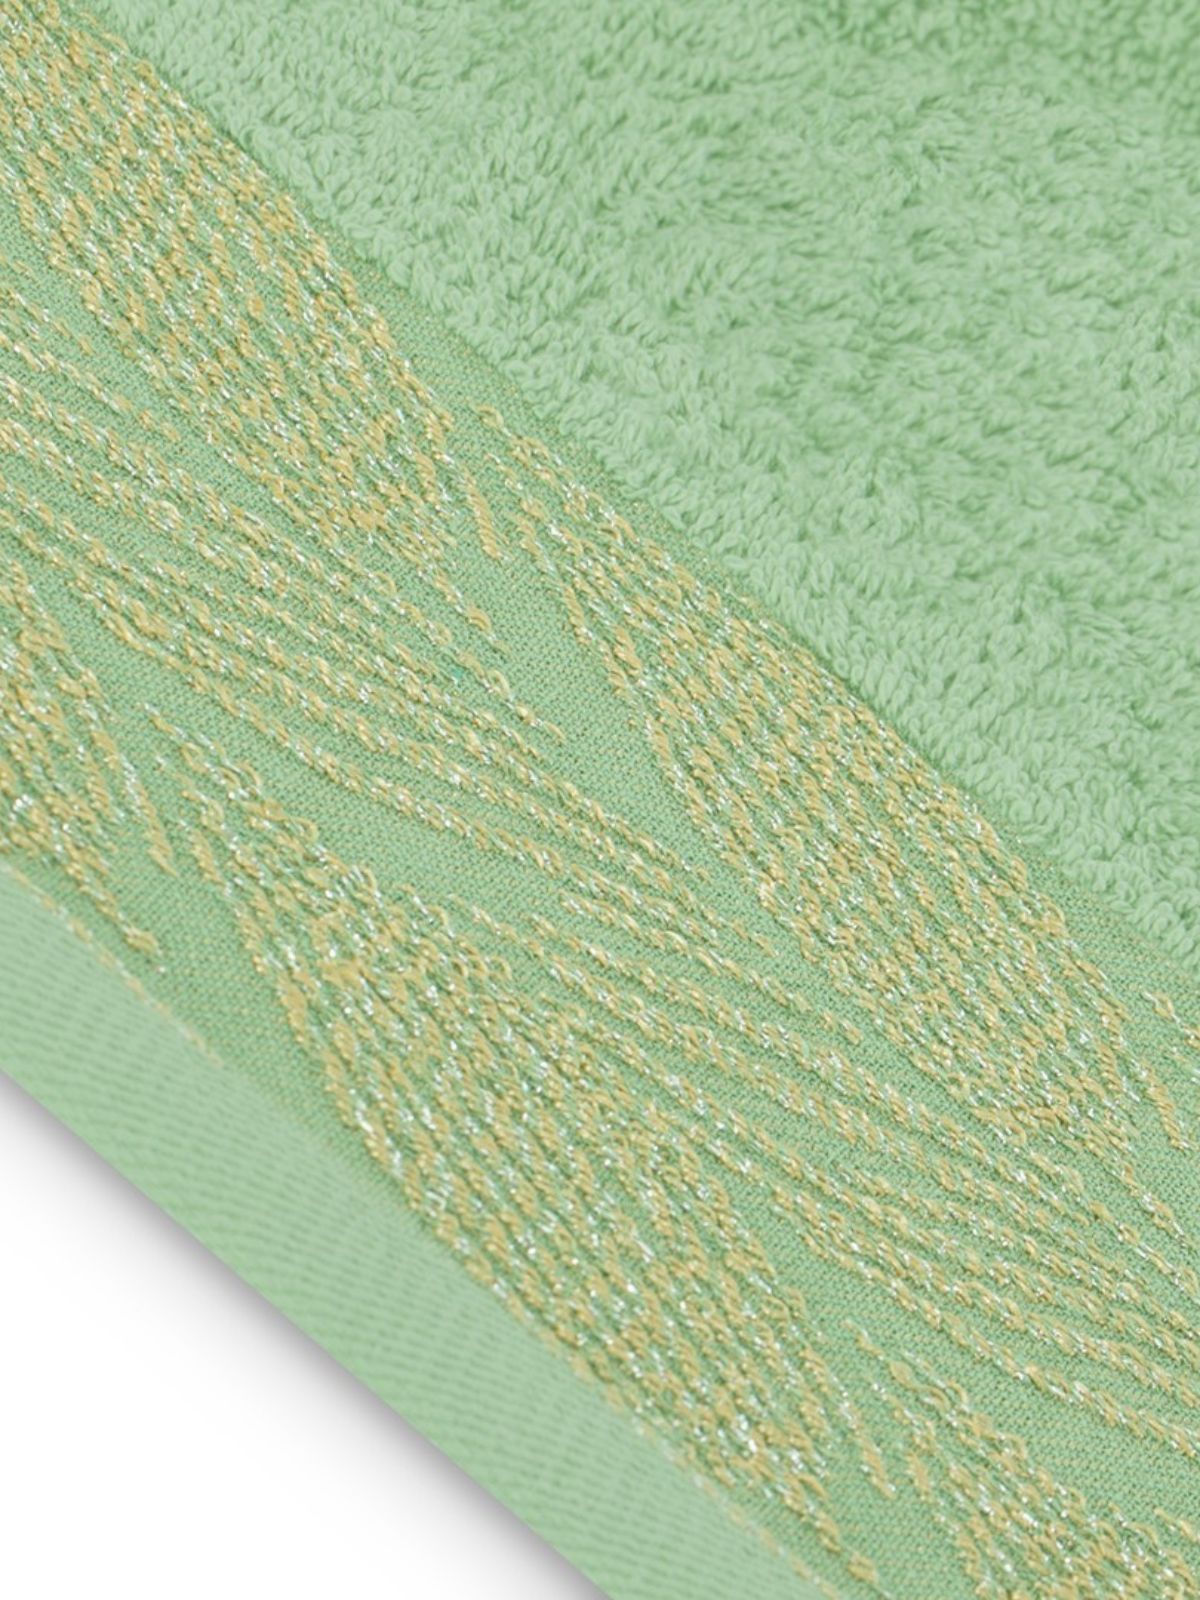 Asciugamano Allium in 100% cotone, colore verde 30x50 cm.-4